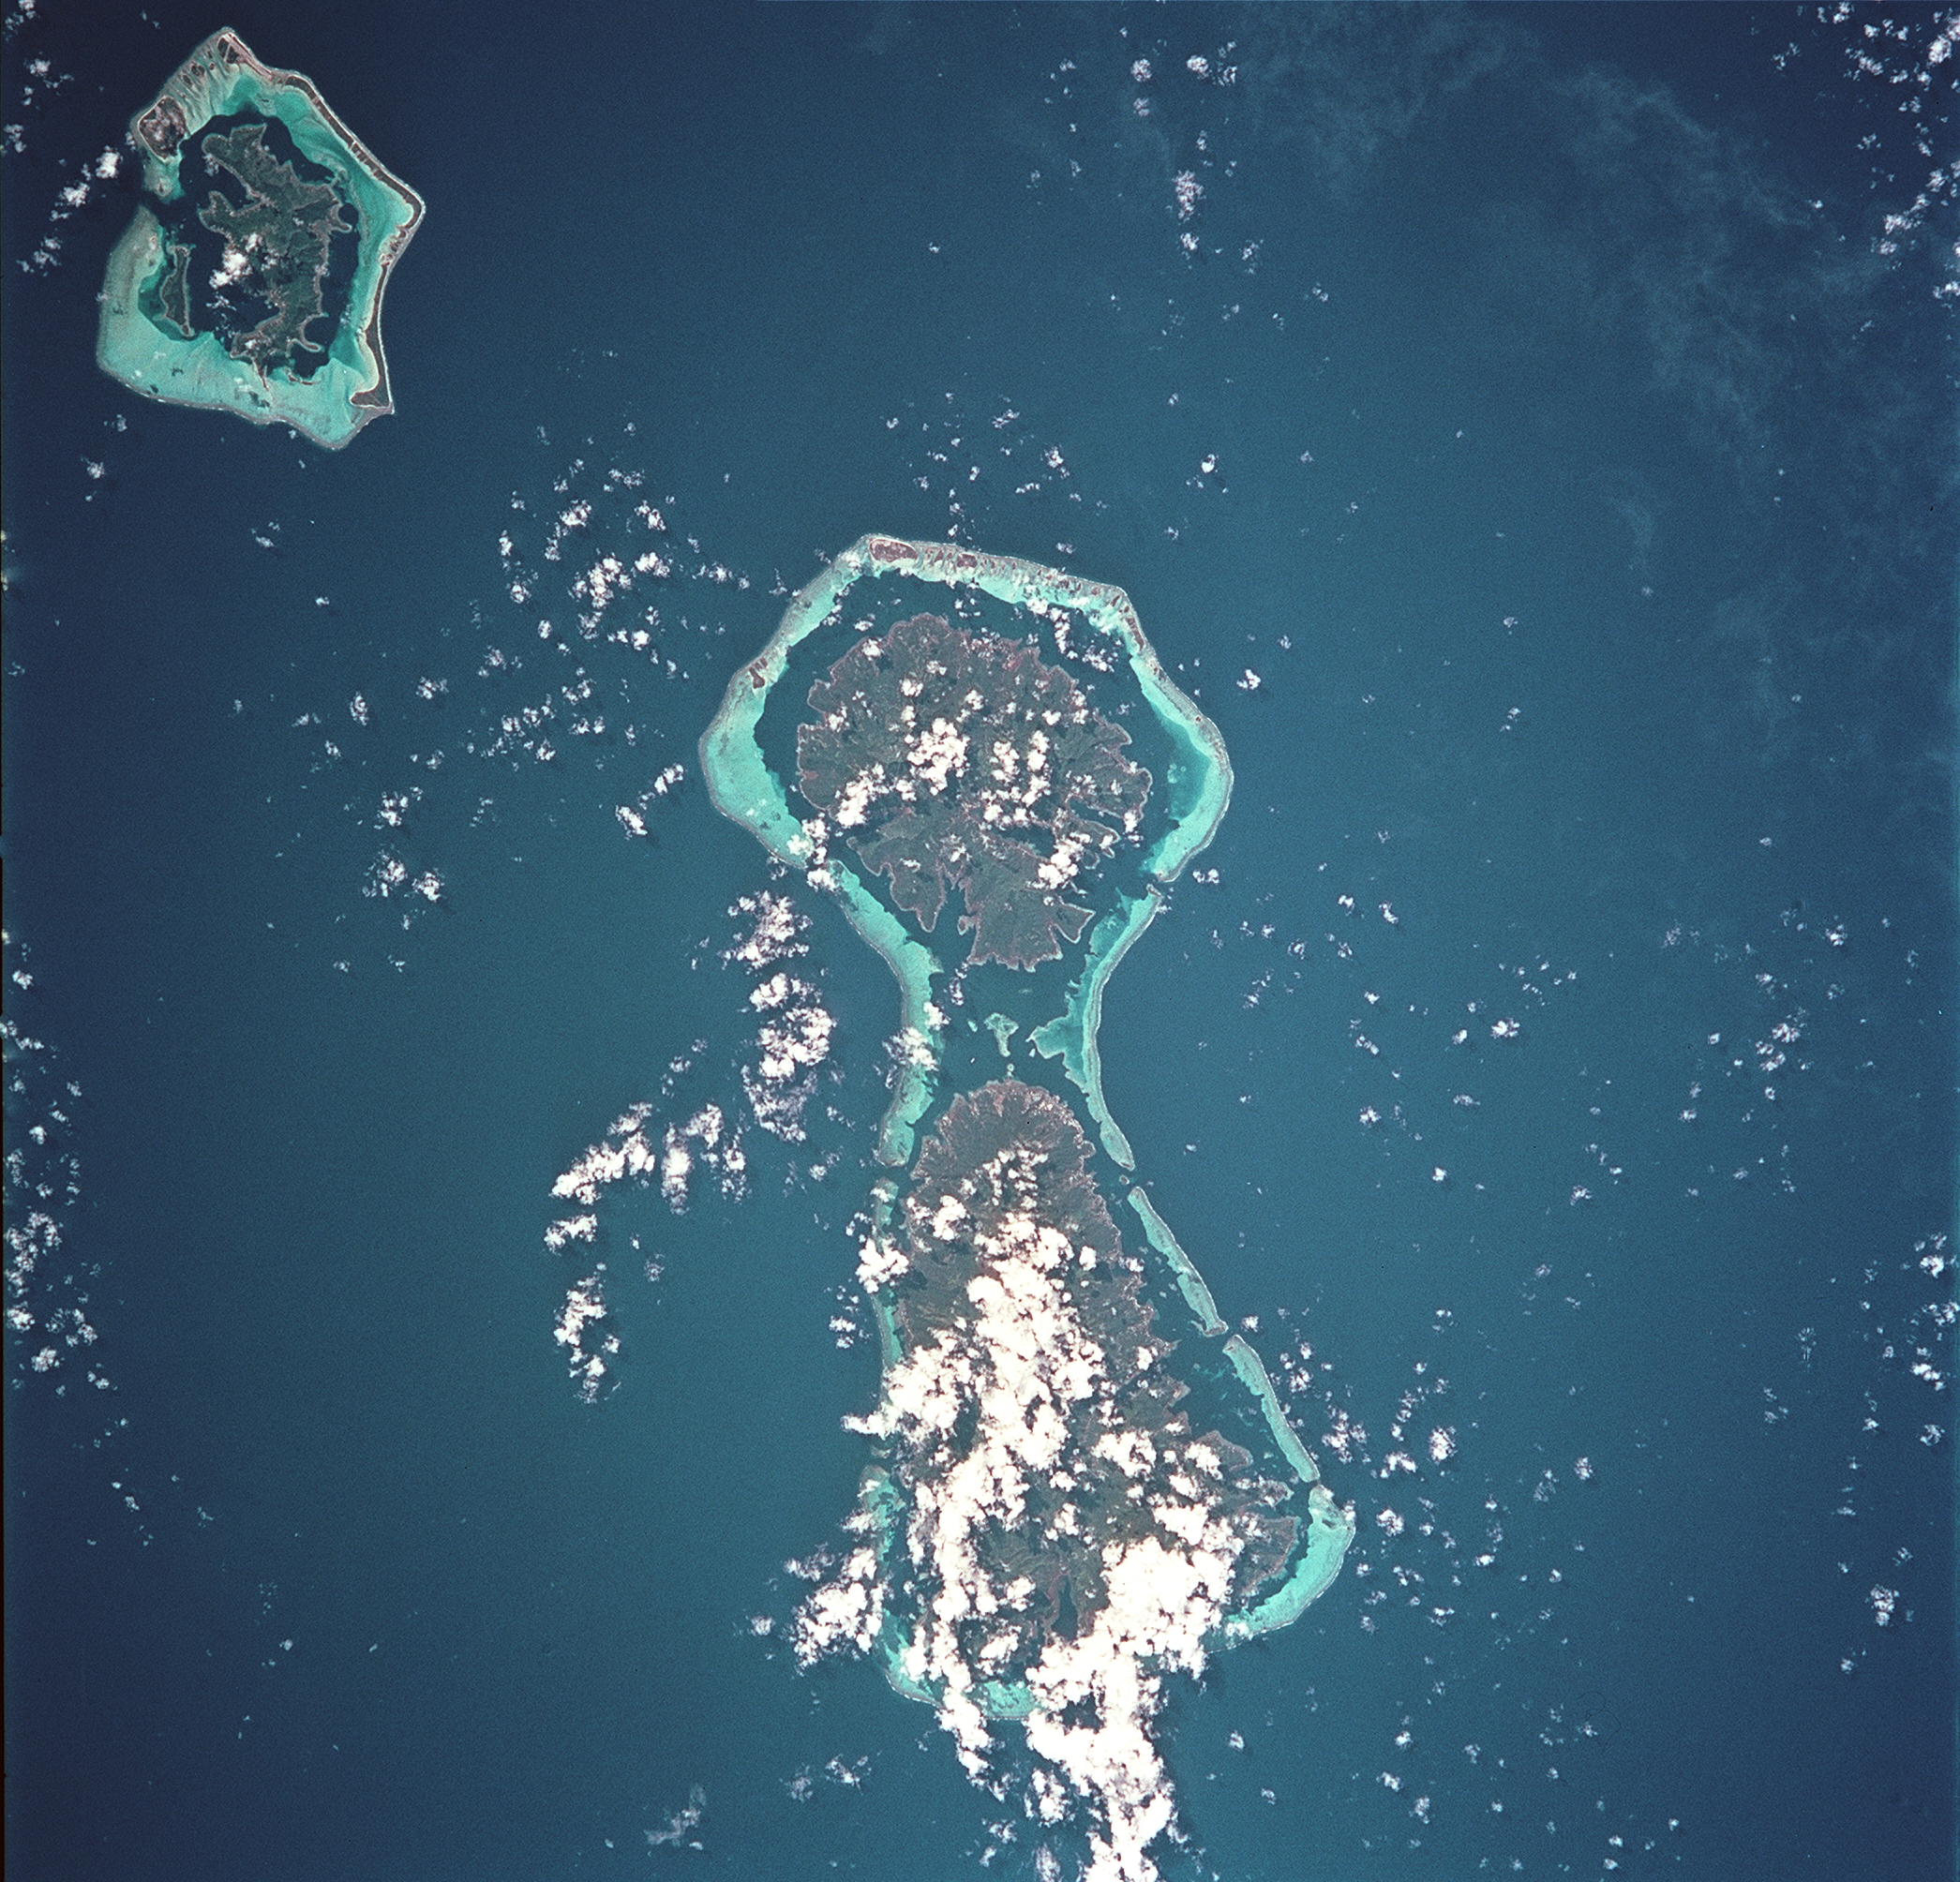 The Society Islands of Bora Bora, Tahaa, and Raiatea